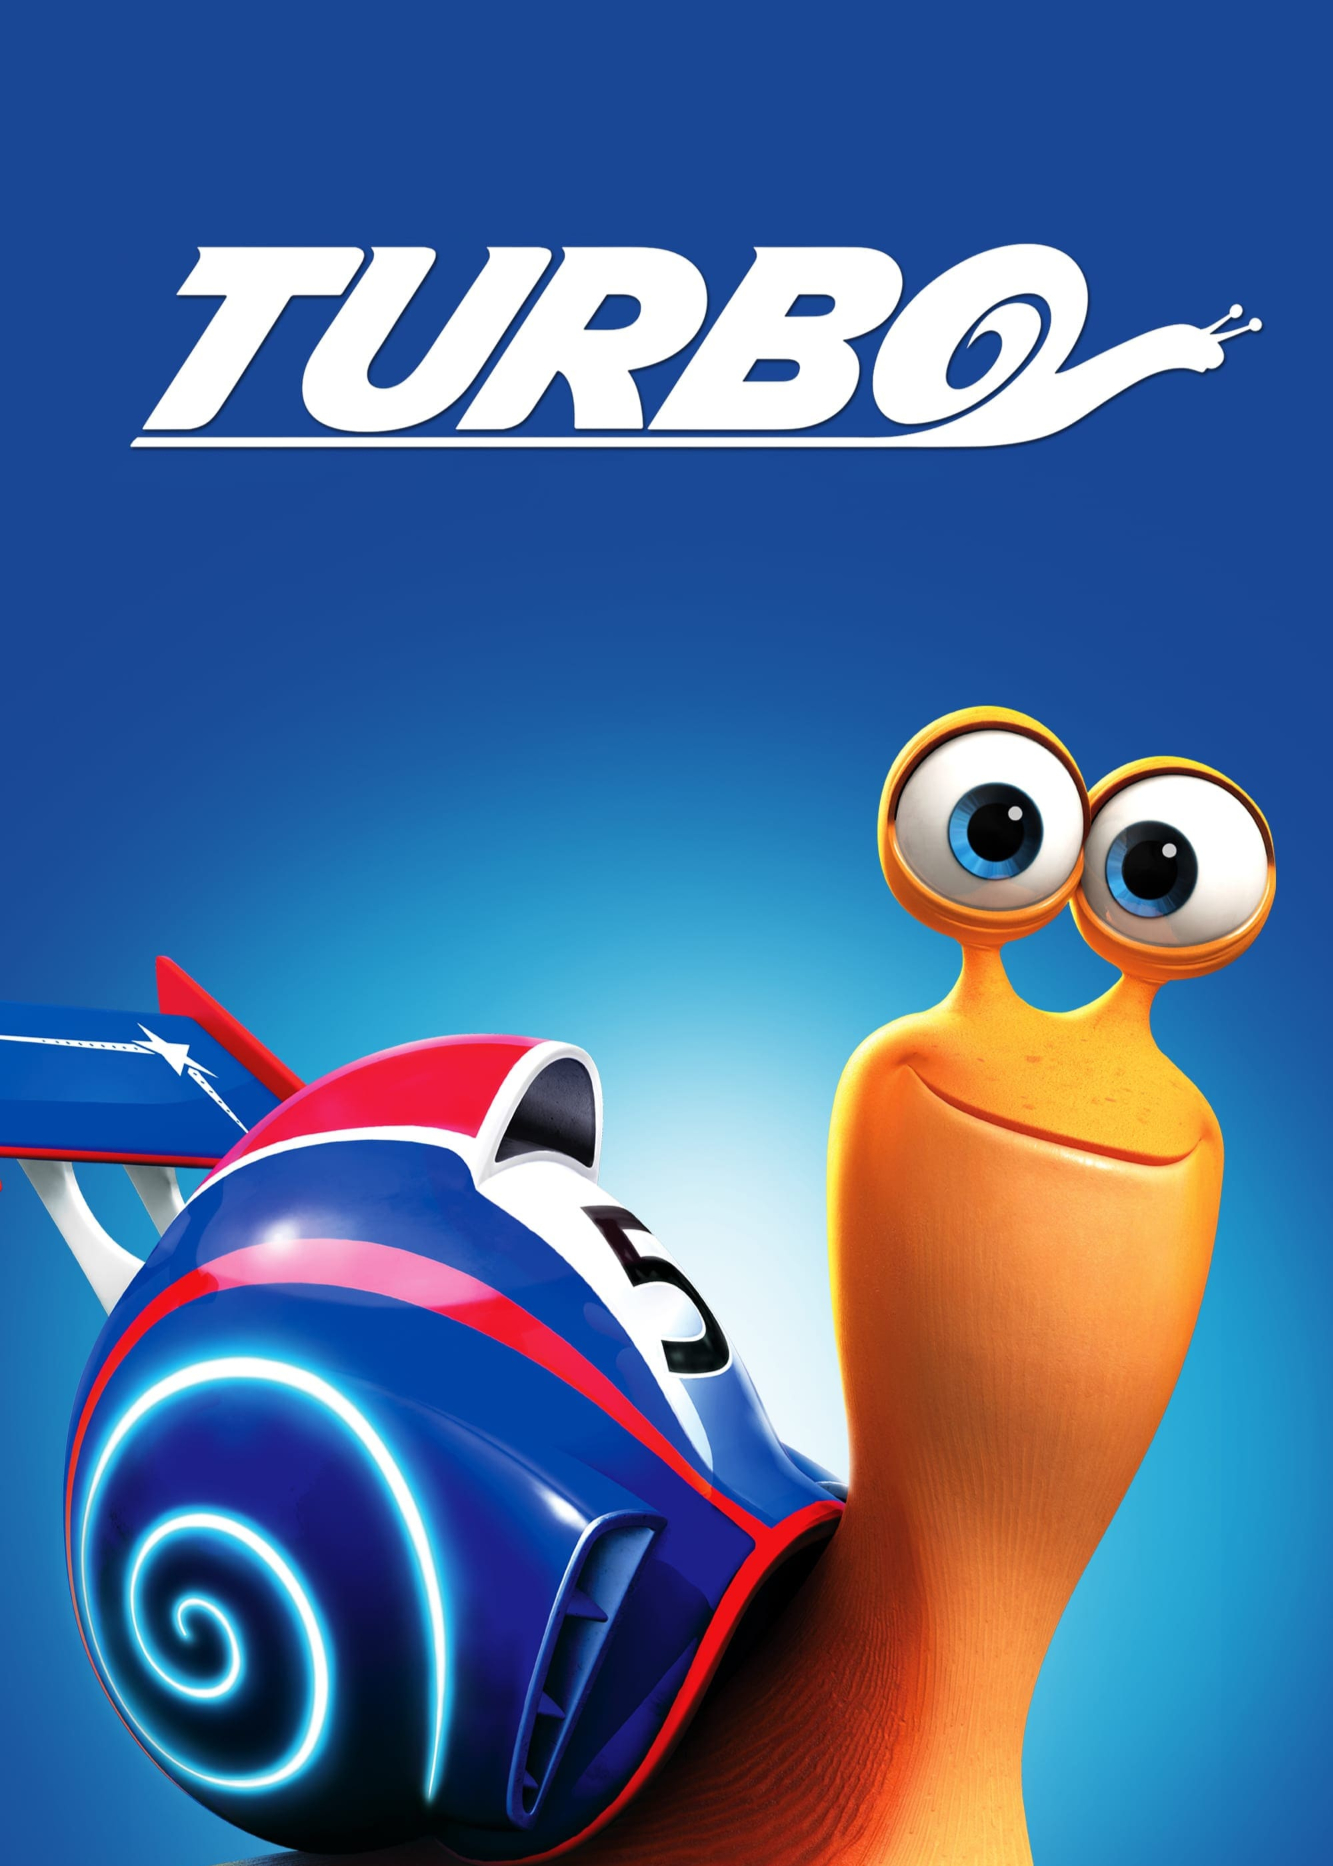 Xem Phim Tay Đua Siêu Tốc (Turbo)